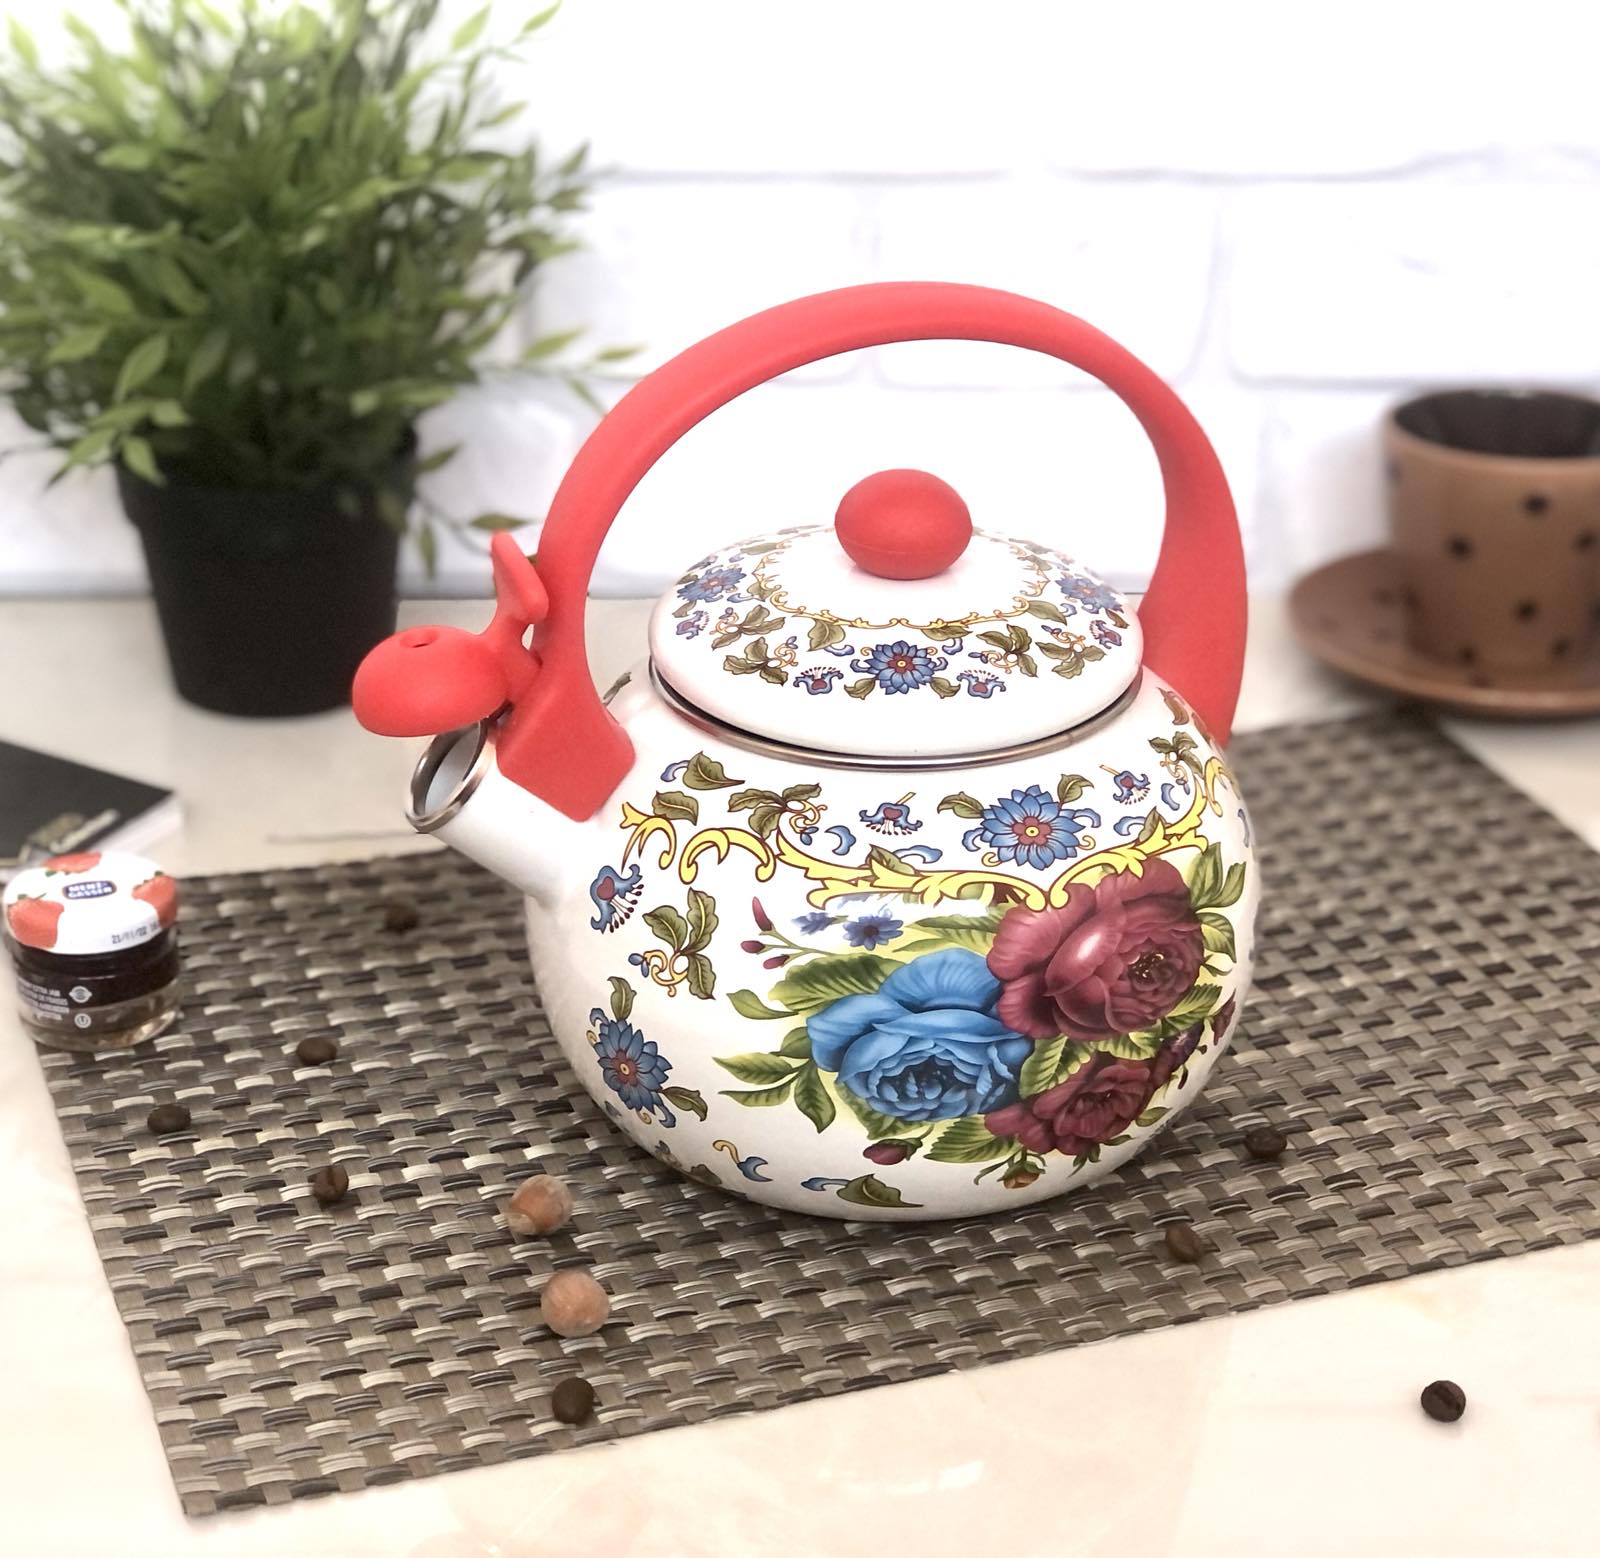 Чайник эмалированный со свистком 2,5 л Edenberg EB - 1779 ✅ базовая цена $12.79 ✔ Опт ✔ Скидки ✔ Заходите! - Интернет-магазин ✅ Фортуна-опт ✅